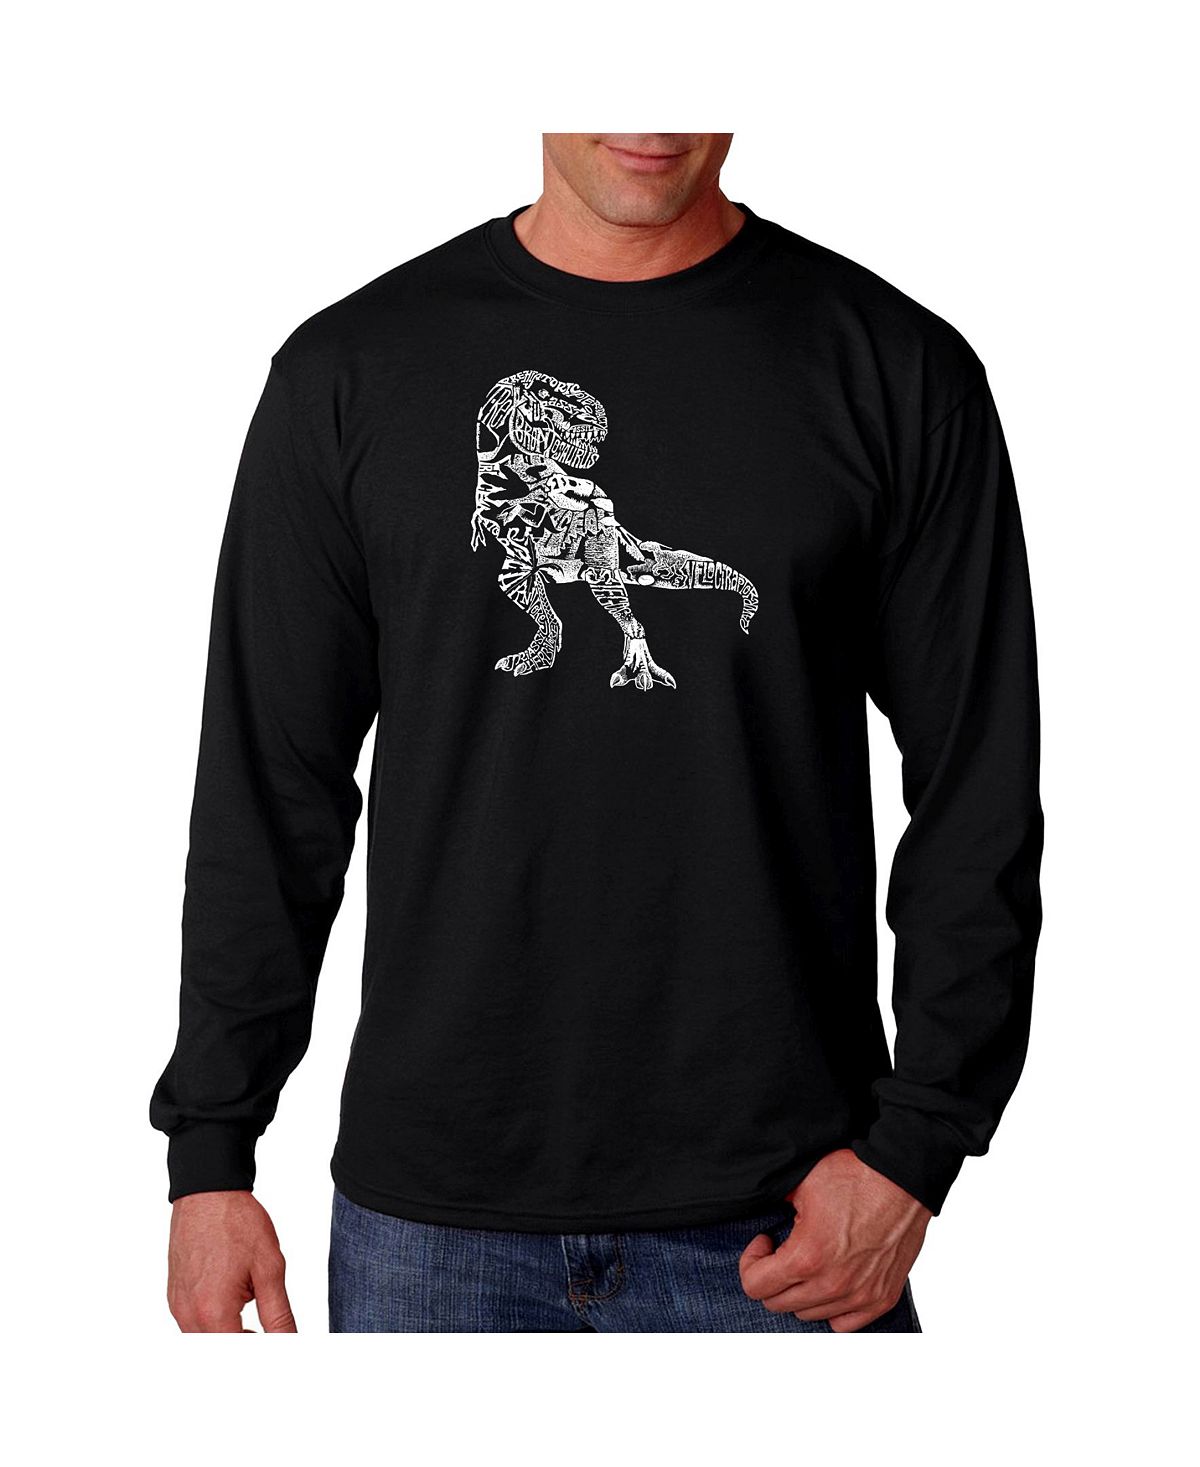 Мужская футболка с длинным рукавом word art - динозавр LA Pop Art, черный набор мир юрского периода фигурка t rex кружка хиппи